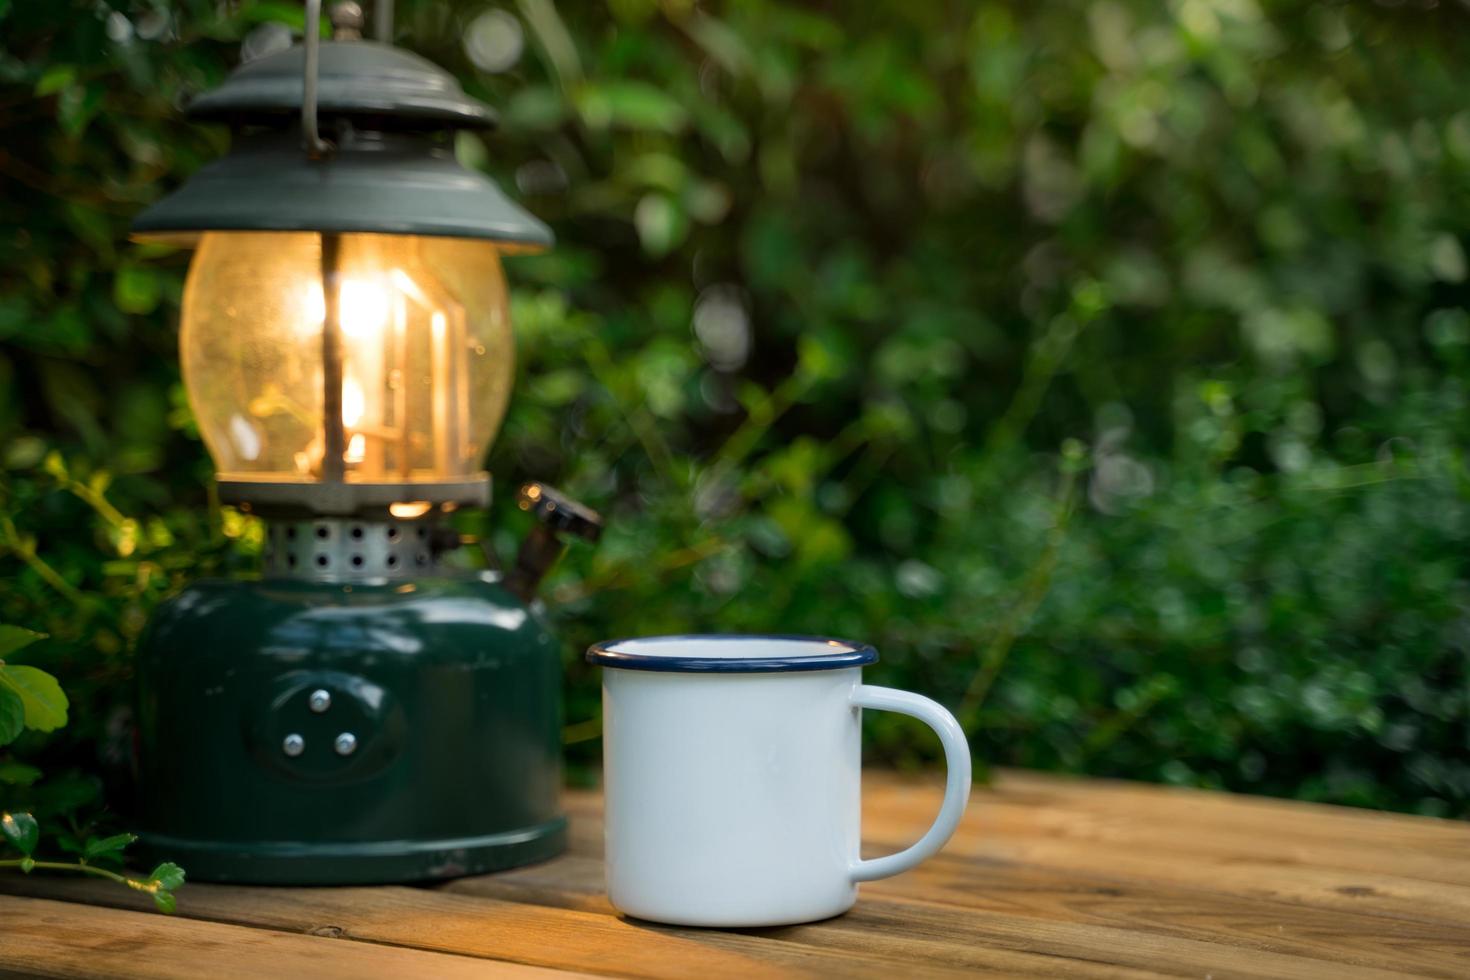 selectieve focus witte emaille koffiemok en koffieset in de tuin met oude lantaarns in een kampeeratmosfeer. zachte focus. foto